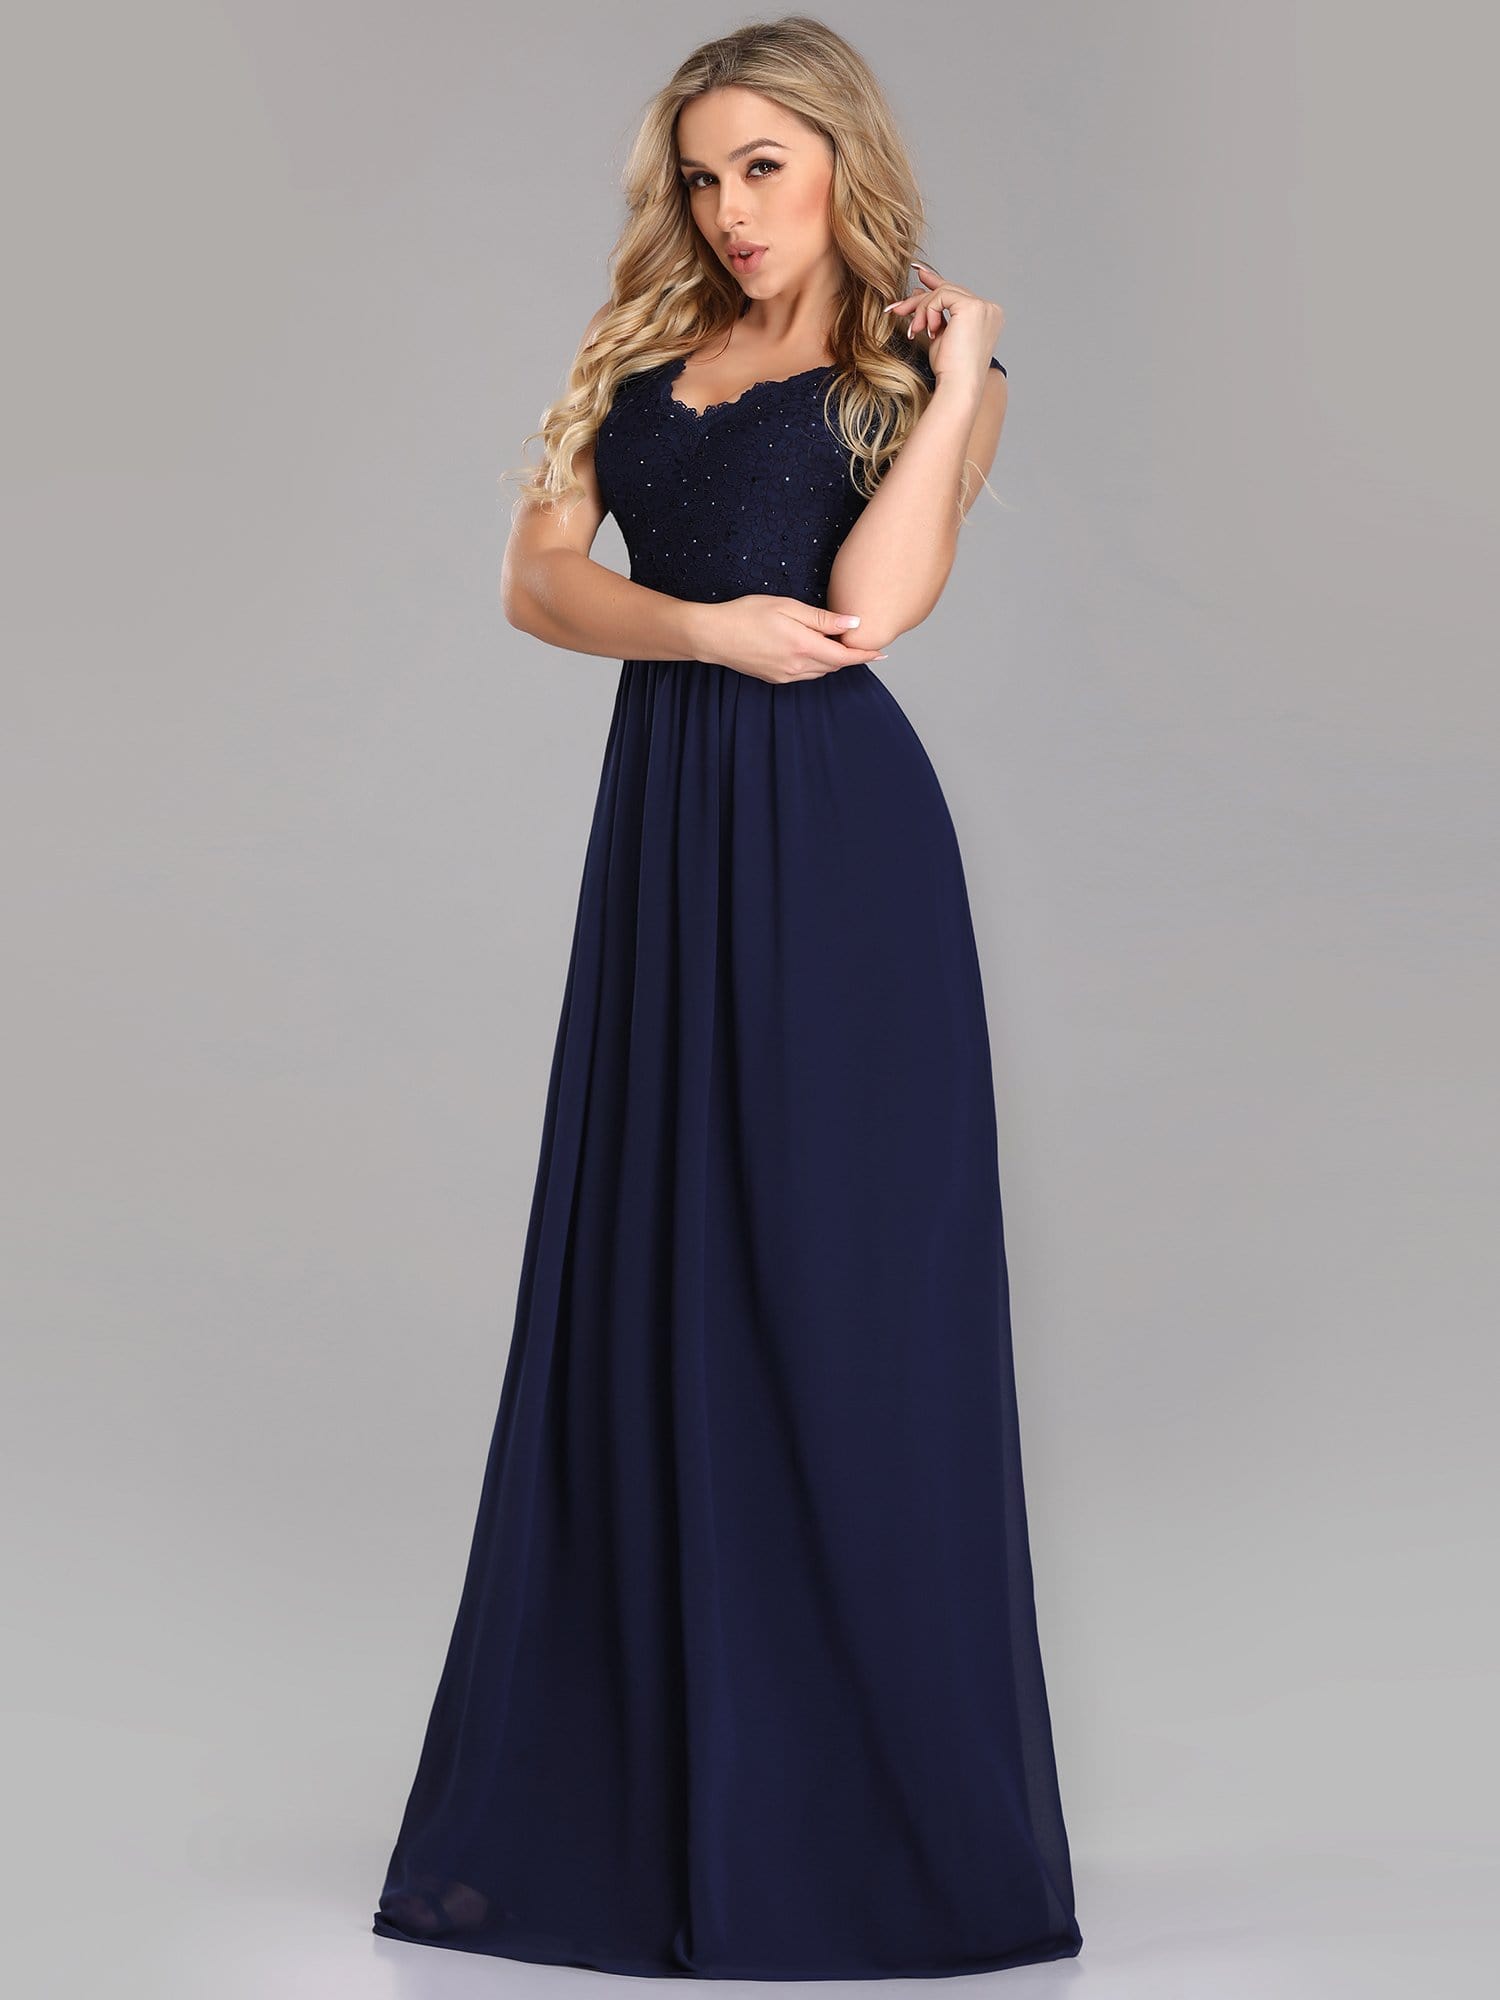 COLOR=Navy Blue | Long Chiffon Evening Dress With Lace Bodice & V Neck-Navy Blue 3